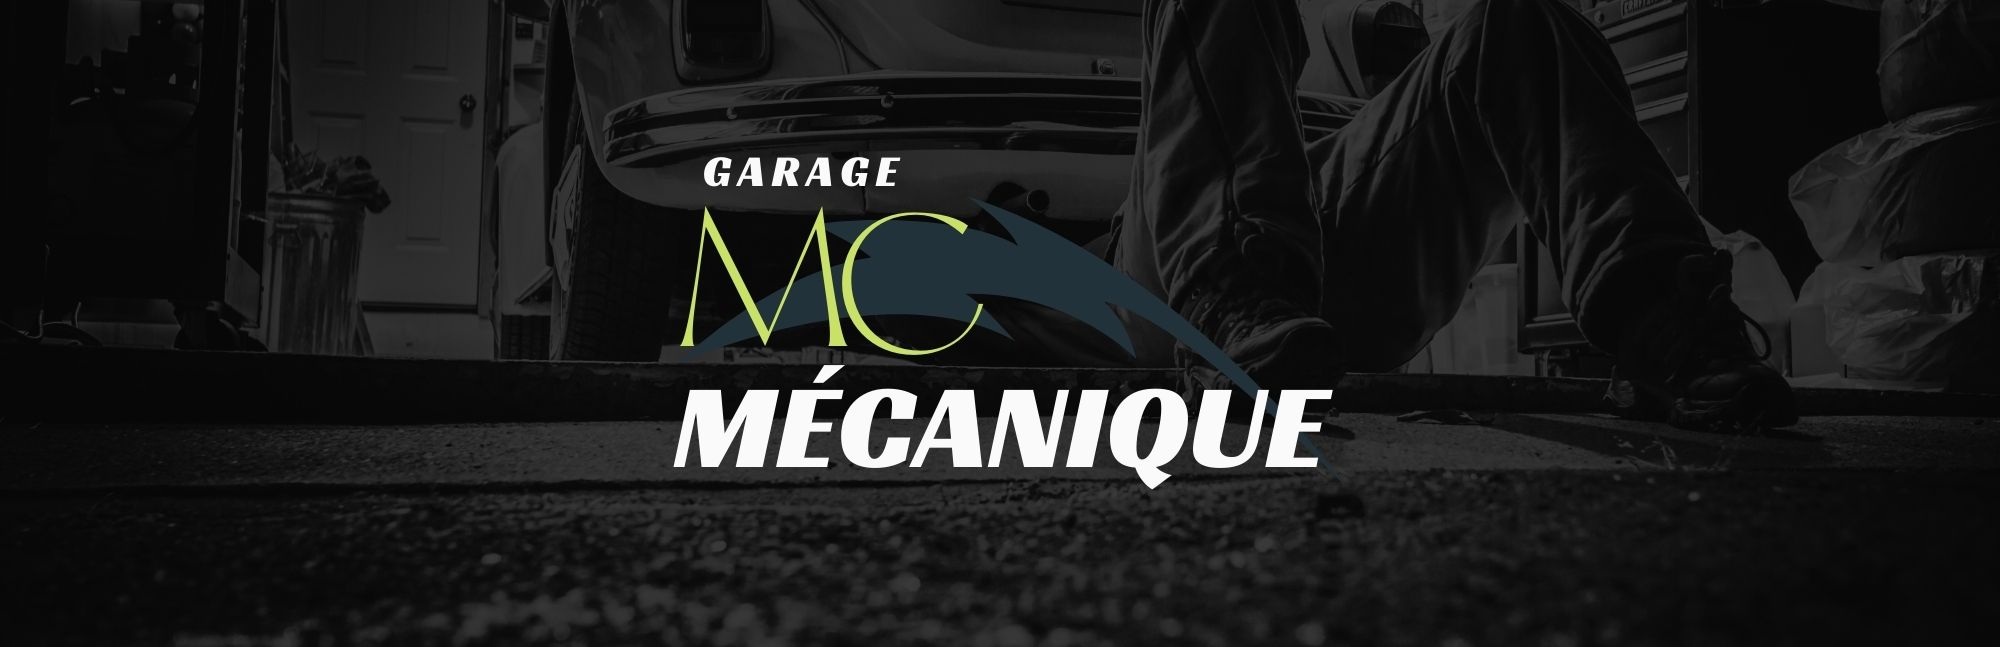 Garage MC Mecanique